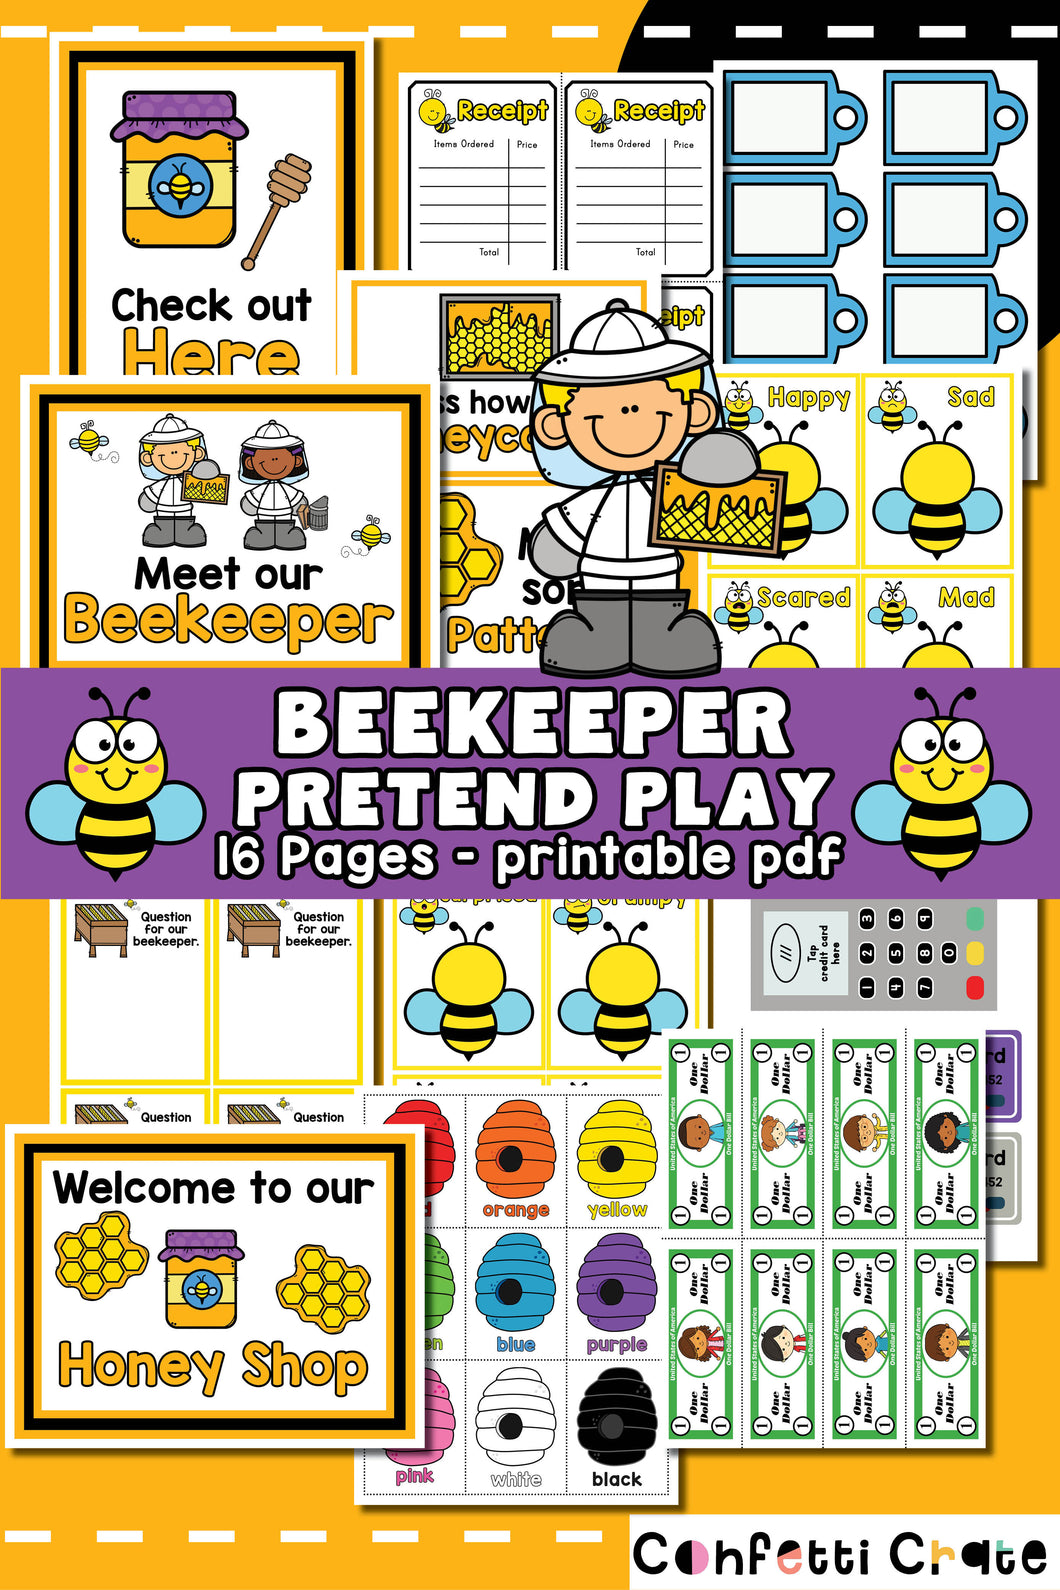 Beekeeper pretend play printables.